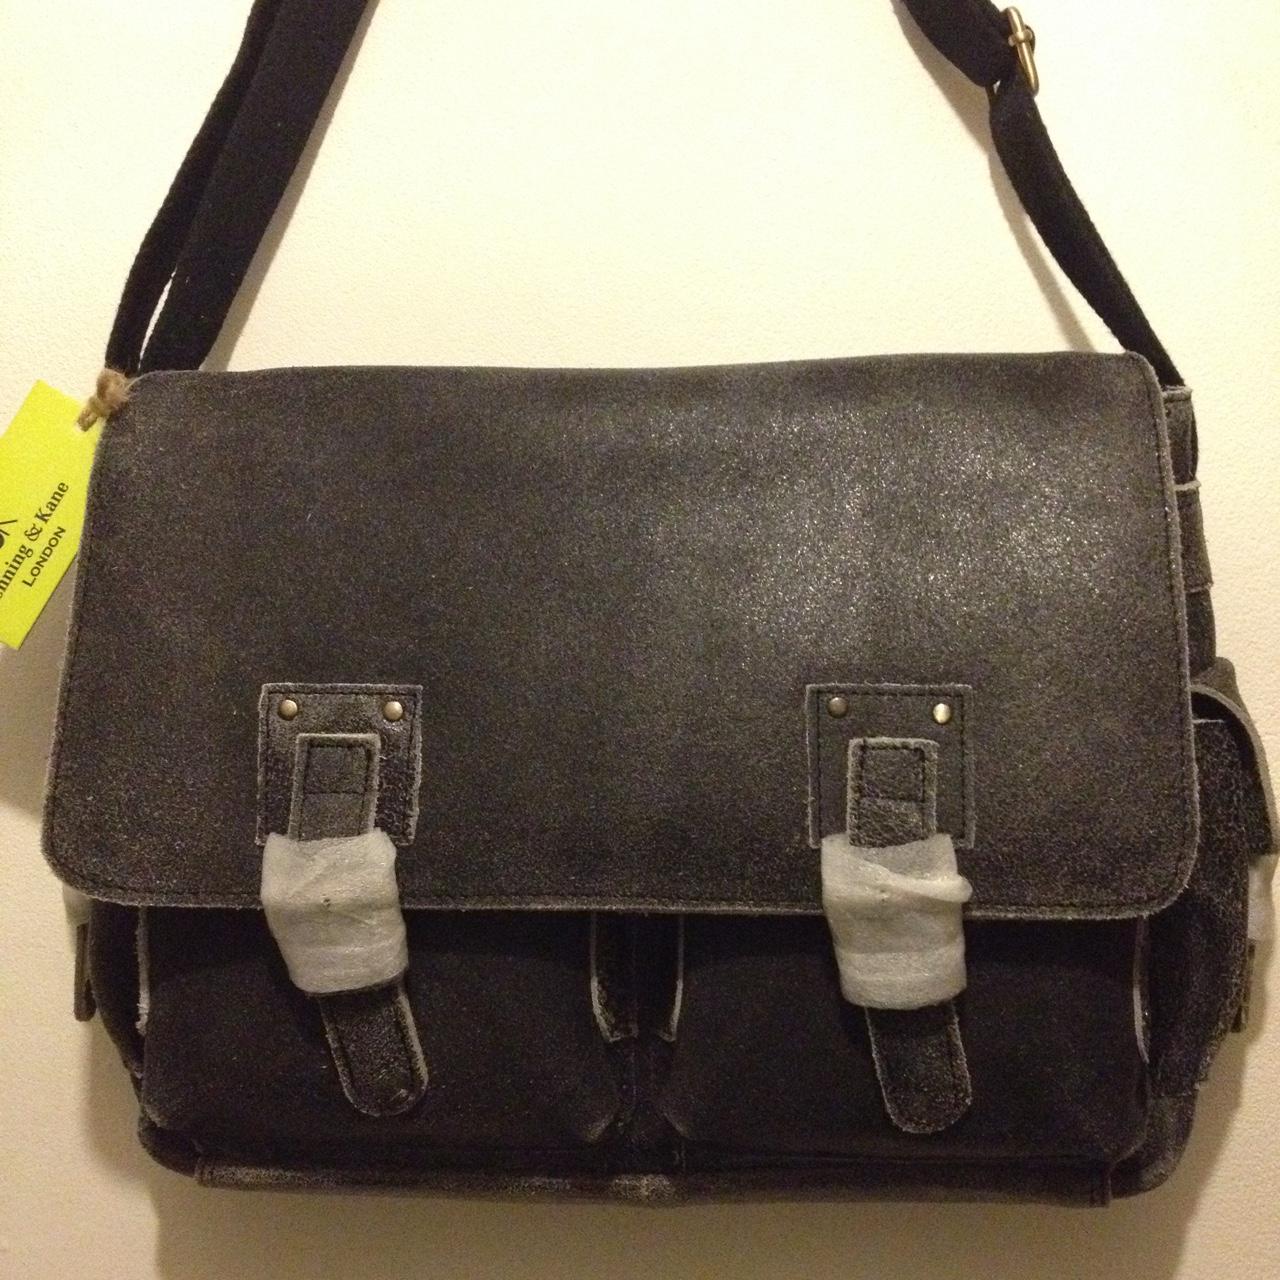 Denning & Kane leather satchel/messenger bag, will... - Depop